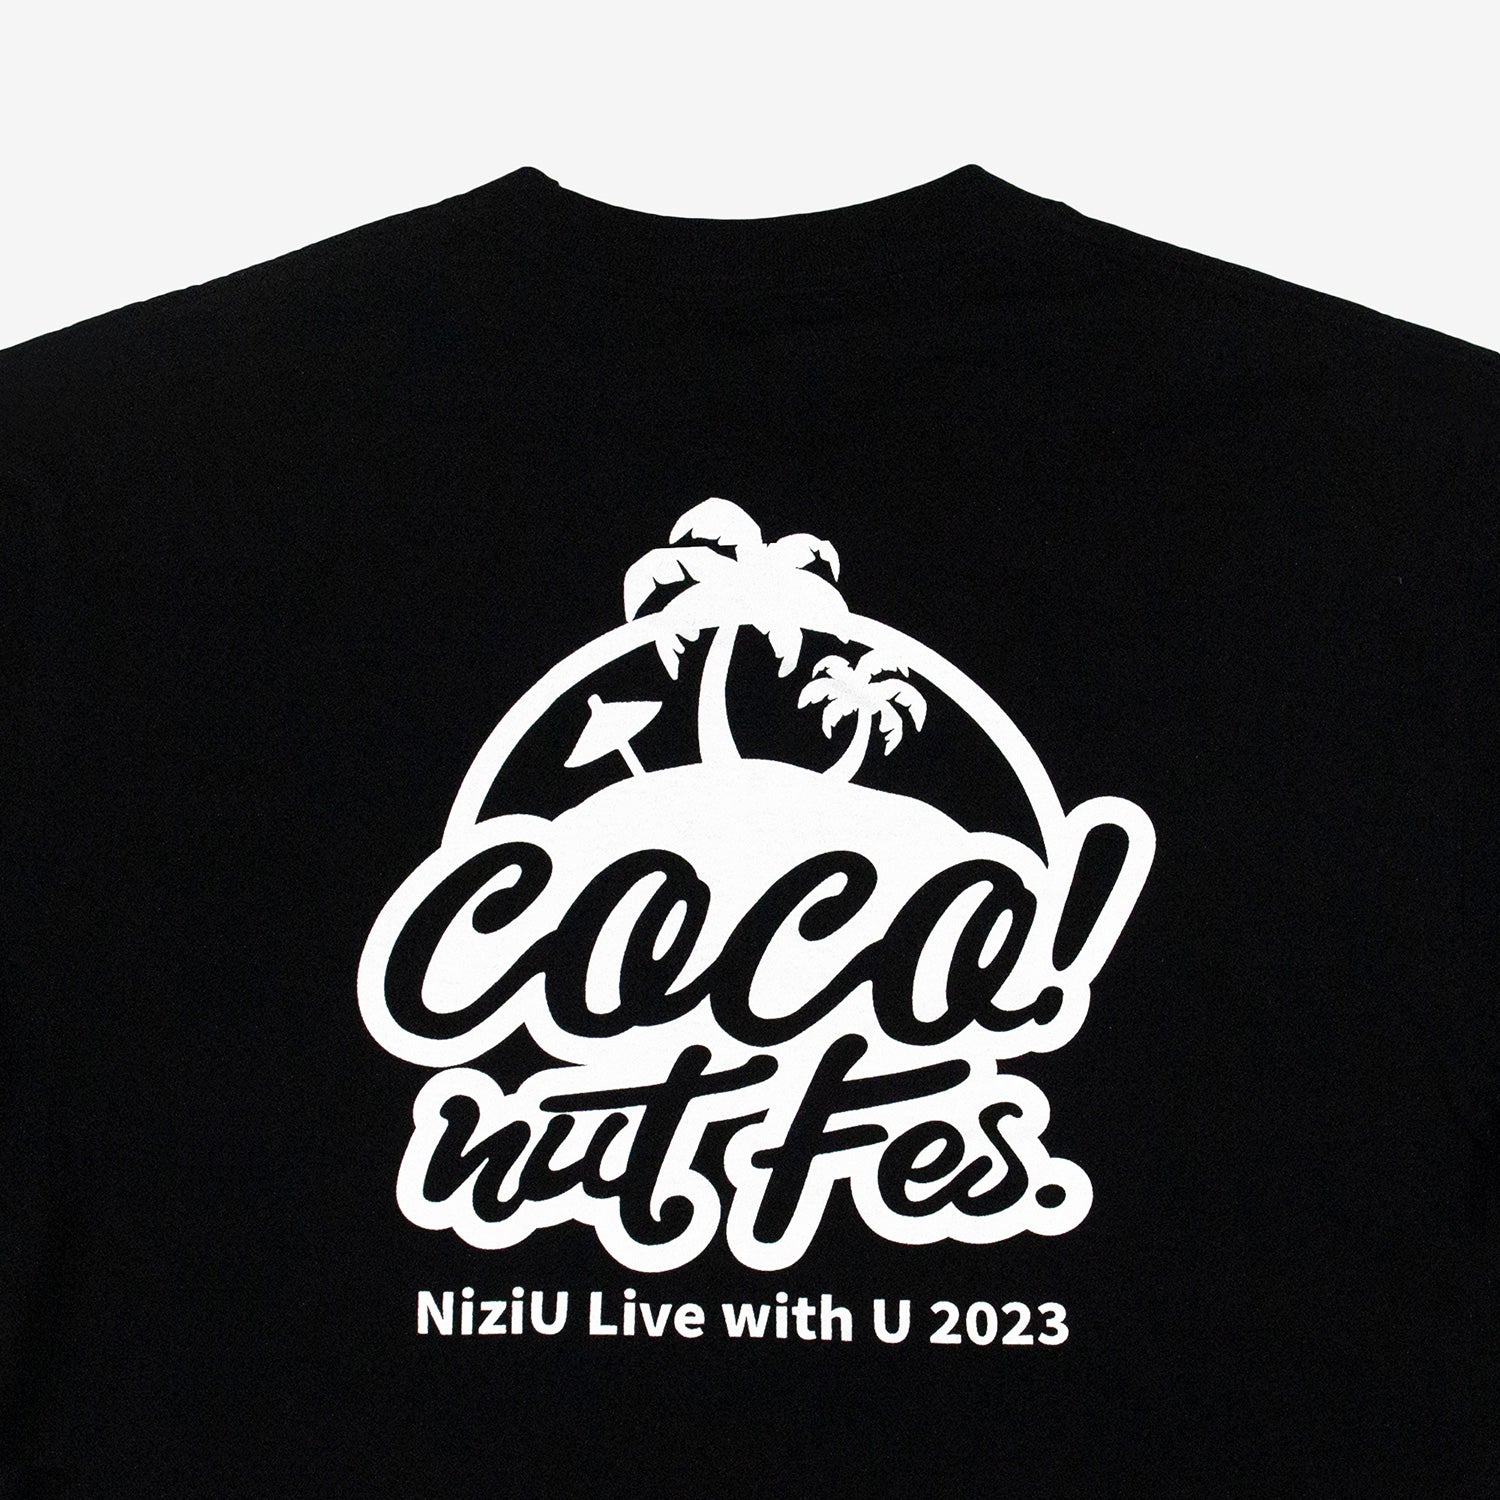 T-SHIRT / BLACK【XL】 / NiziU『COCO! nut Fes.』